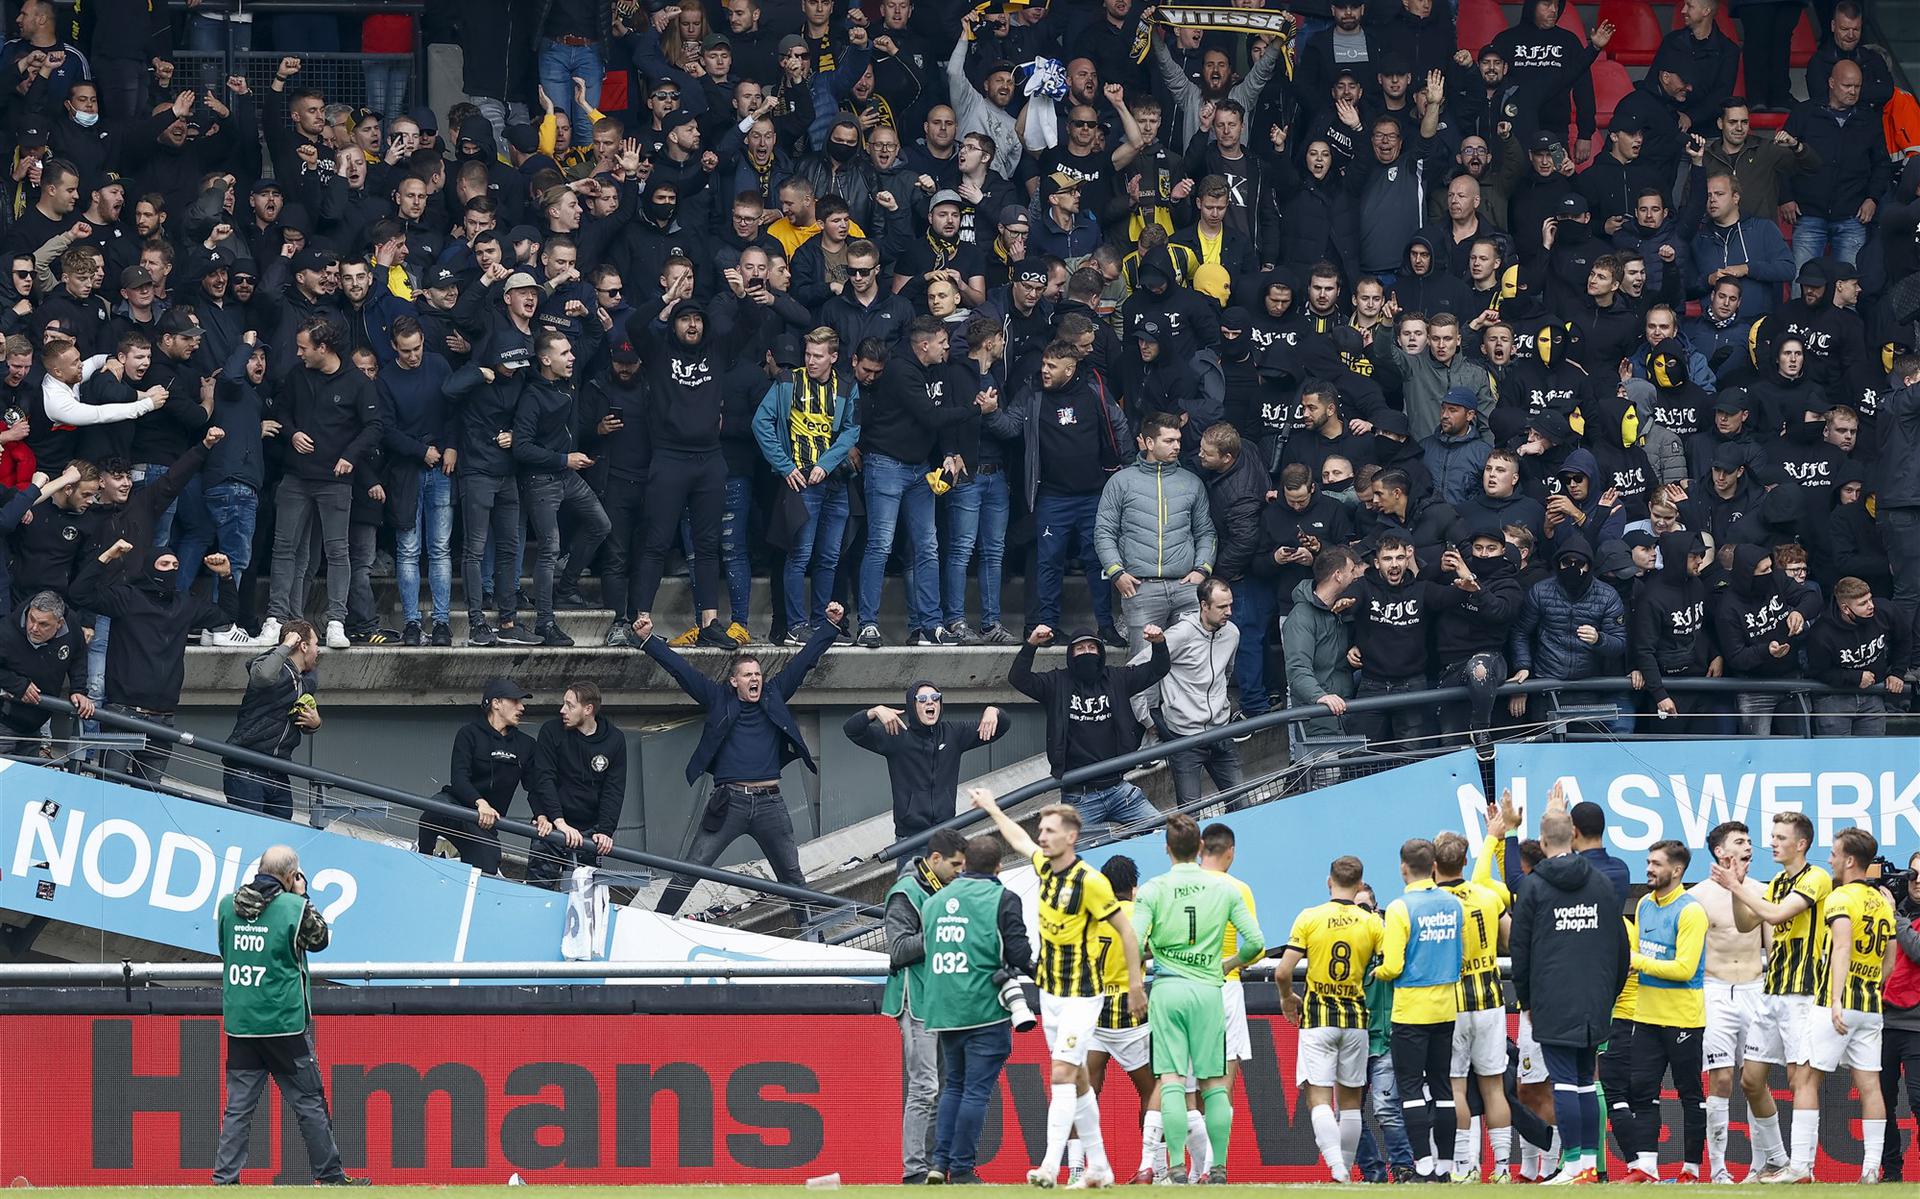 Bij de streekderby NEC-Vitesse werd een verslaggever van Omroep Gelderland aangevallen door voetbalfans. Tijdens de wedstrijd bezweek de tribune met hossende Vitesse-supporters.